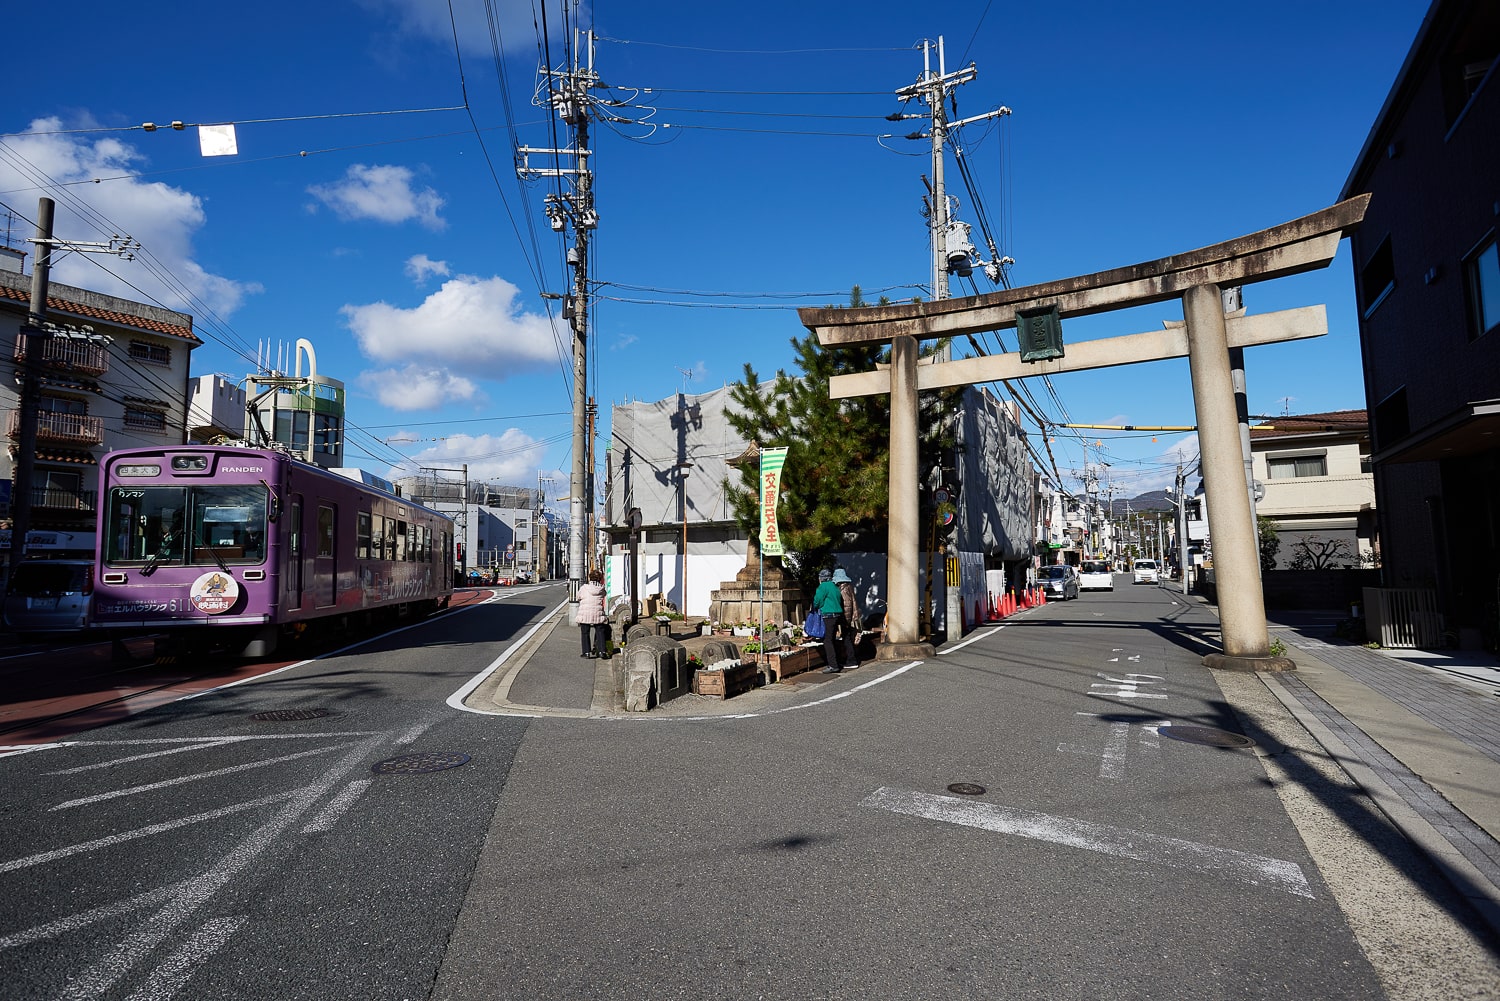 嵐電「蚕ノ社駅」付近は、道路上に線路が走る文字通りの路面電車スタイル。京都に残る唯一の路面電車区間だ。右手が「一の鳥居」。